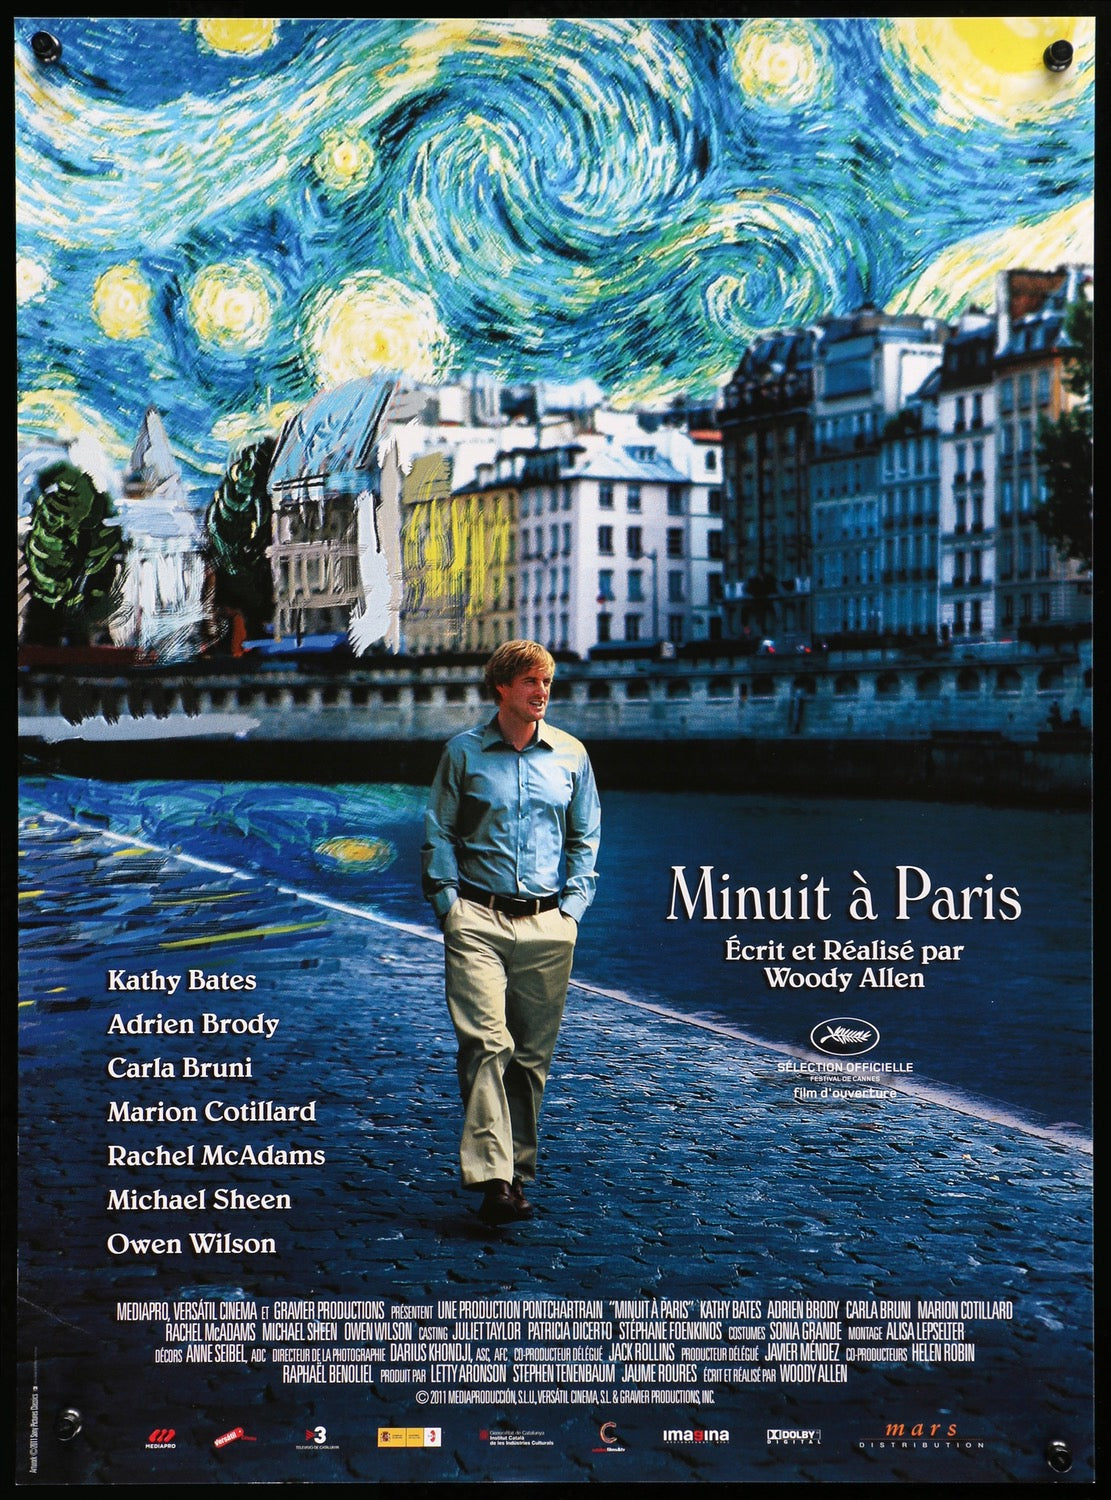 Midnight in Paris (2011) original movie poster for sale at Original Film Art